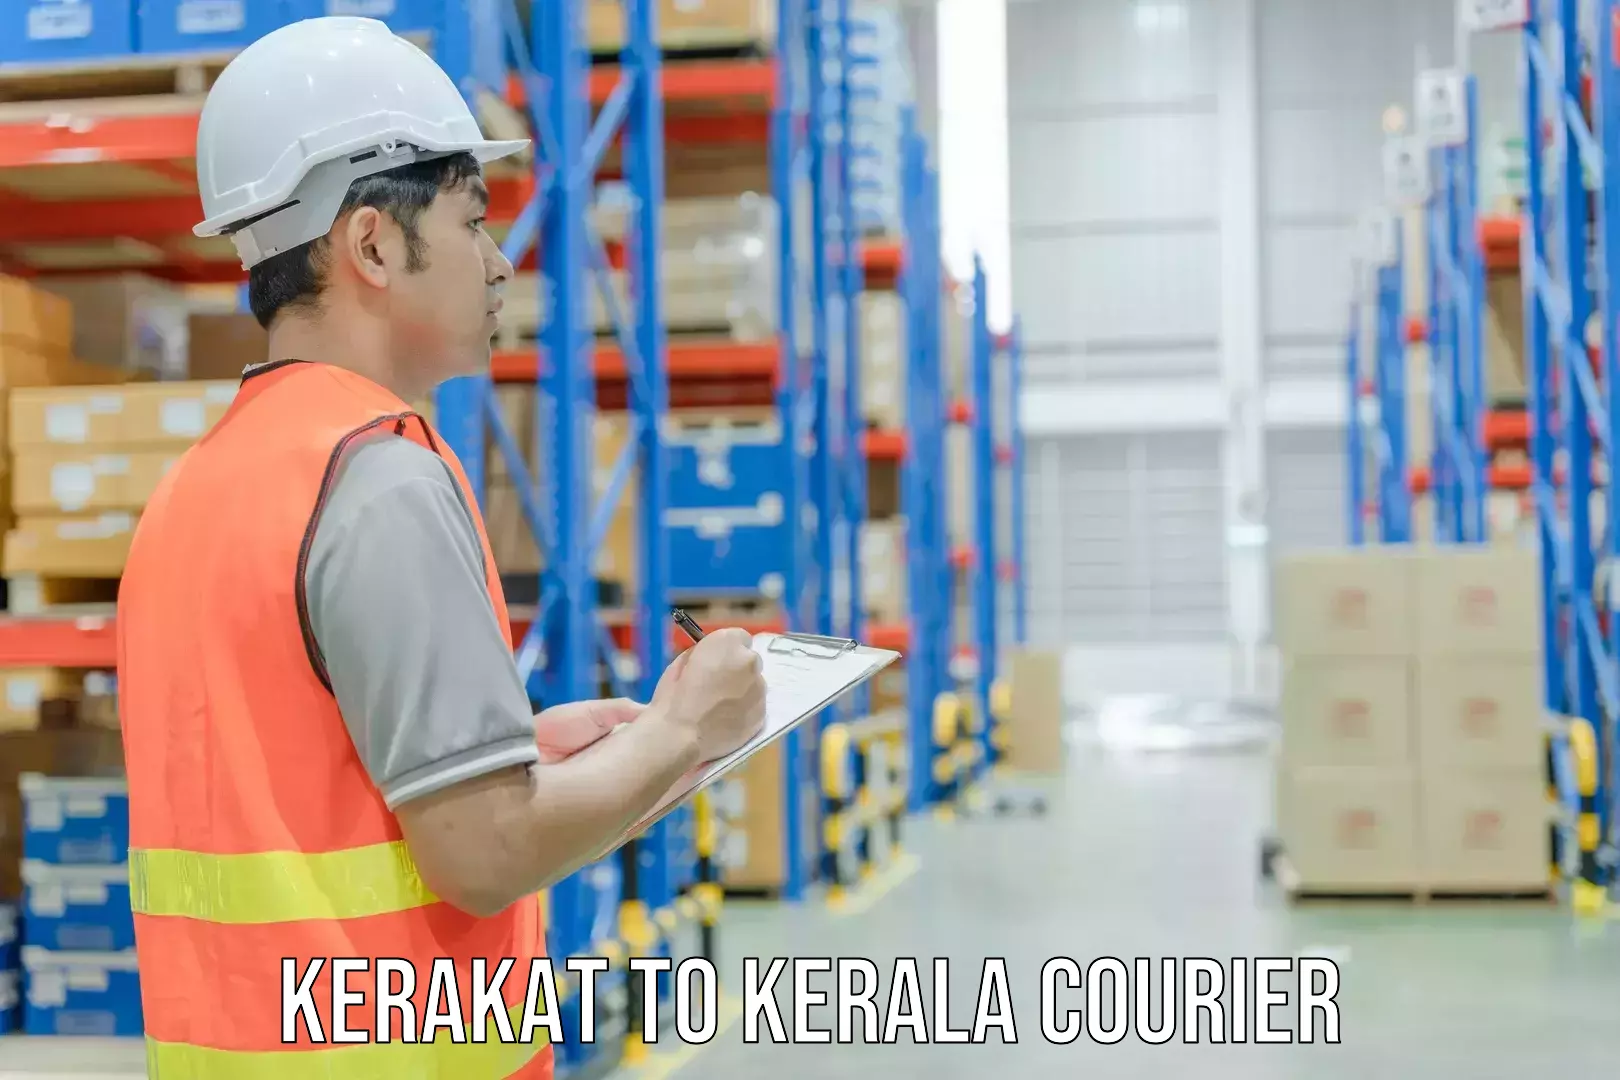 Full-service courier options Kerakat to Kalluvathukkal